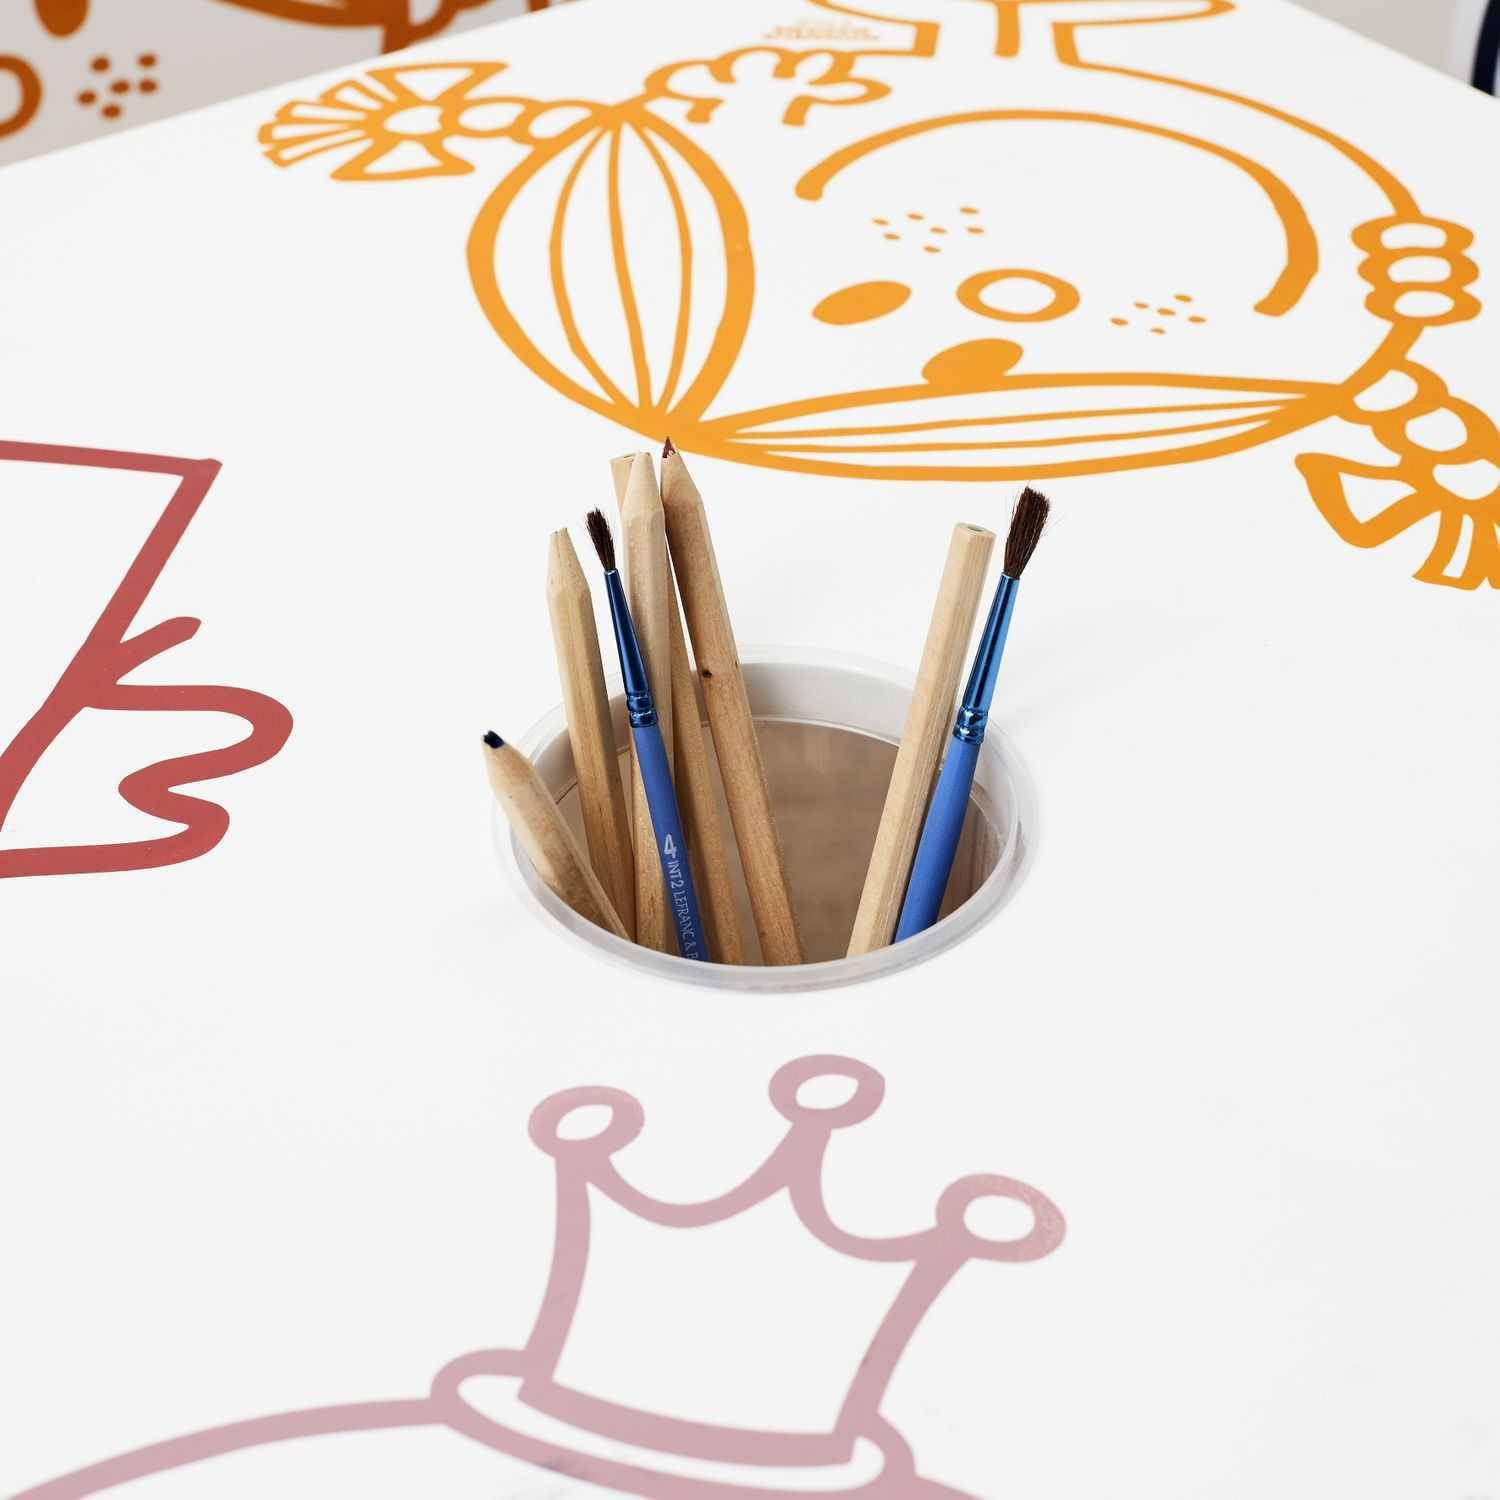 Tavolo con tazza per matite per bambini nella collezione Mister e Miss Photo5